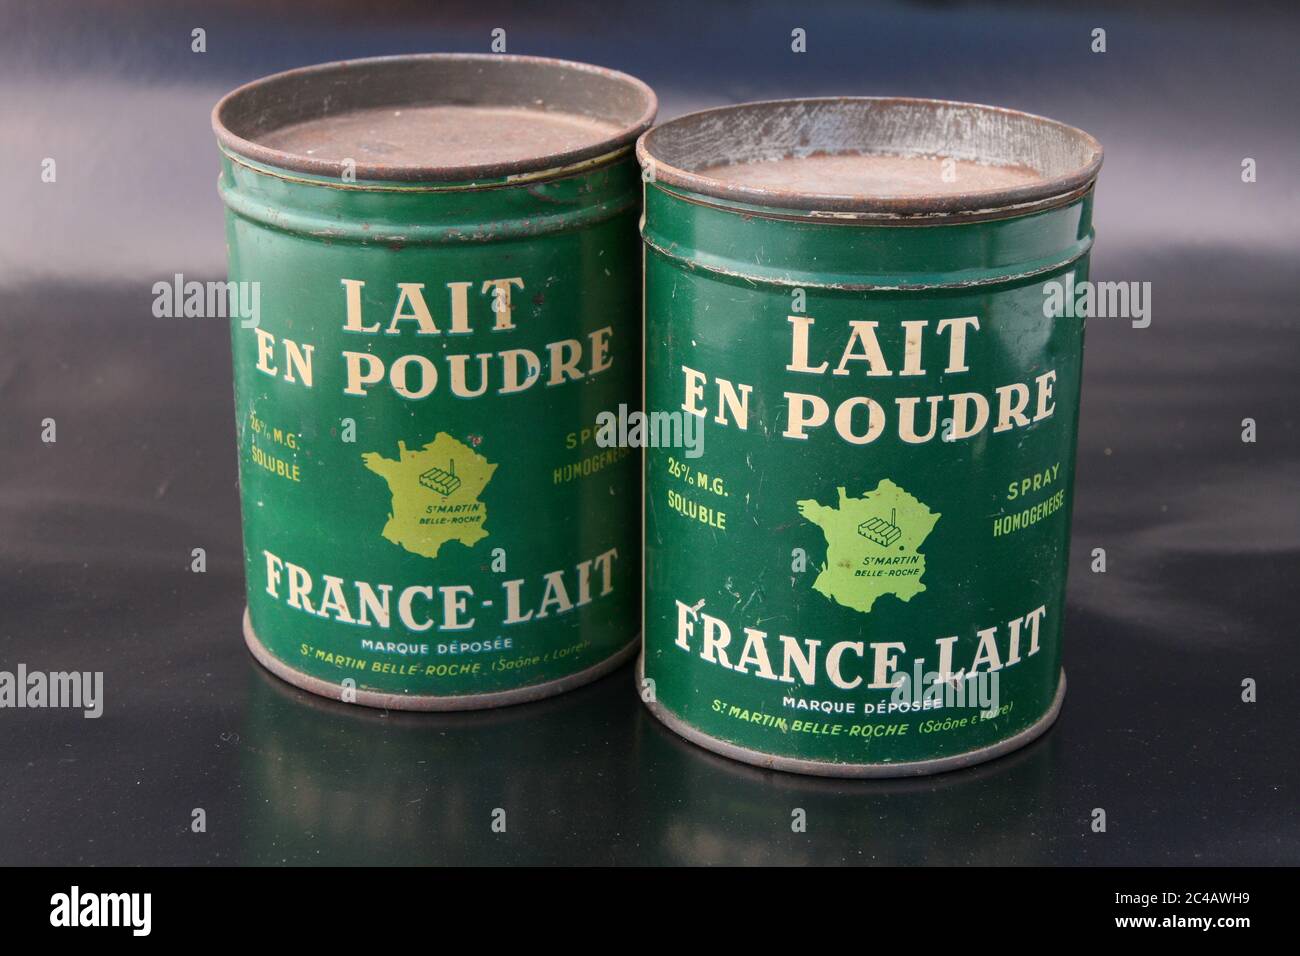 Boites de lait en poudre France Lait vers 1950 / Boxes of France Lait  powdered milk circa 1950 Stock Photo - Alamy